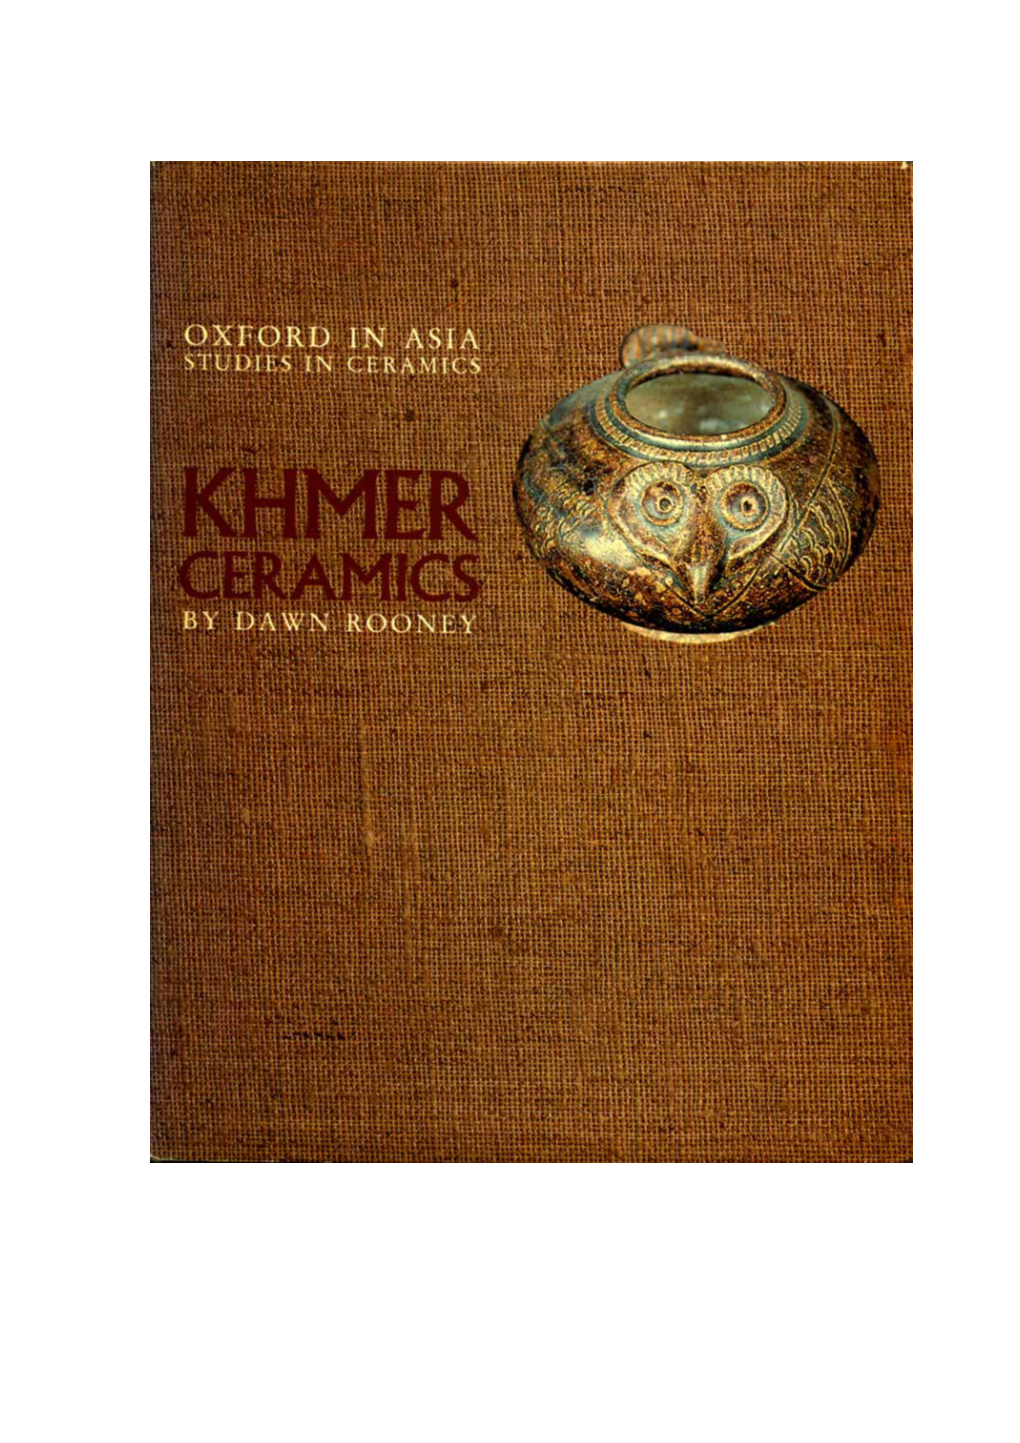 (Khmer Ceramics (Singapore, Oxford